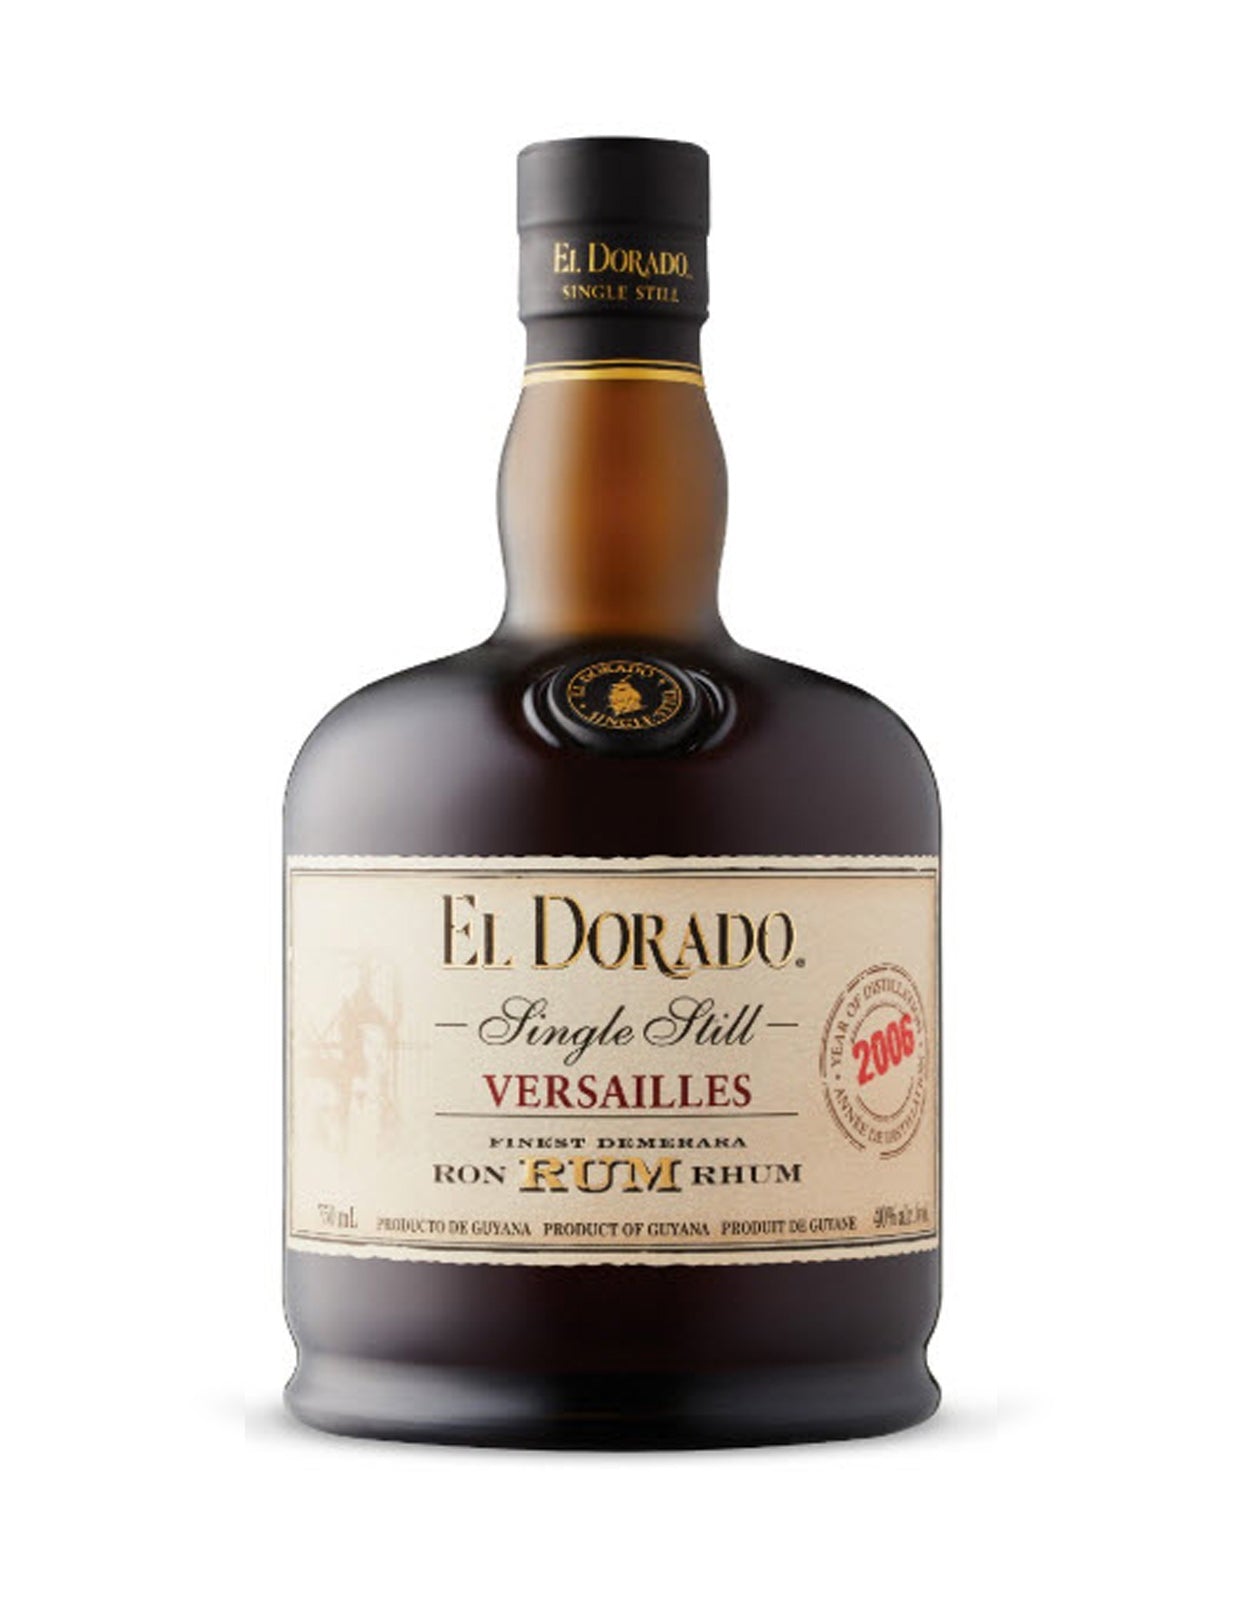 El Dorado Single Still Versailles 2006 Rum